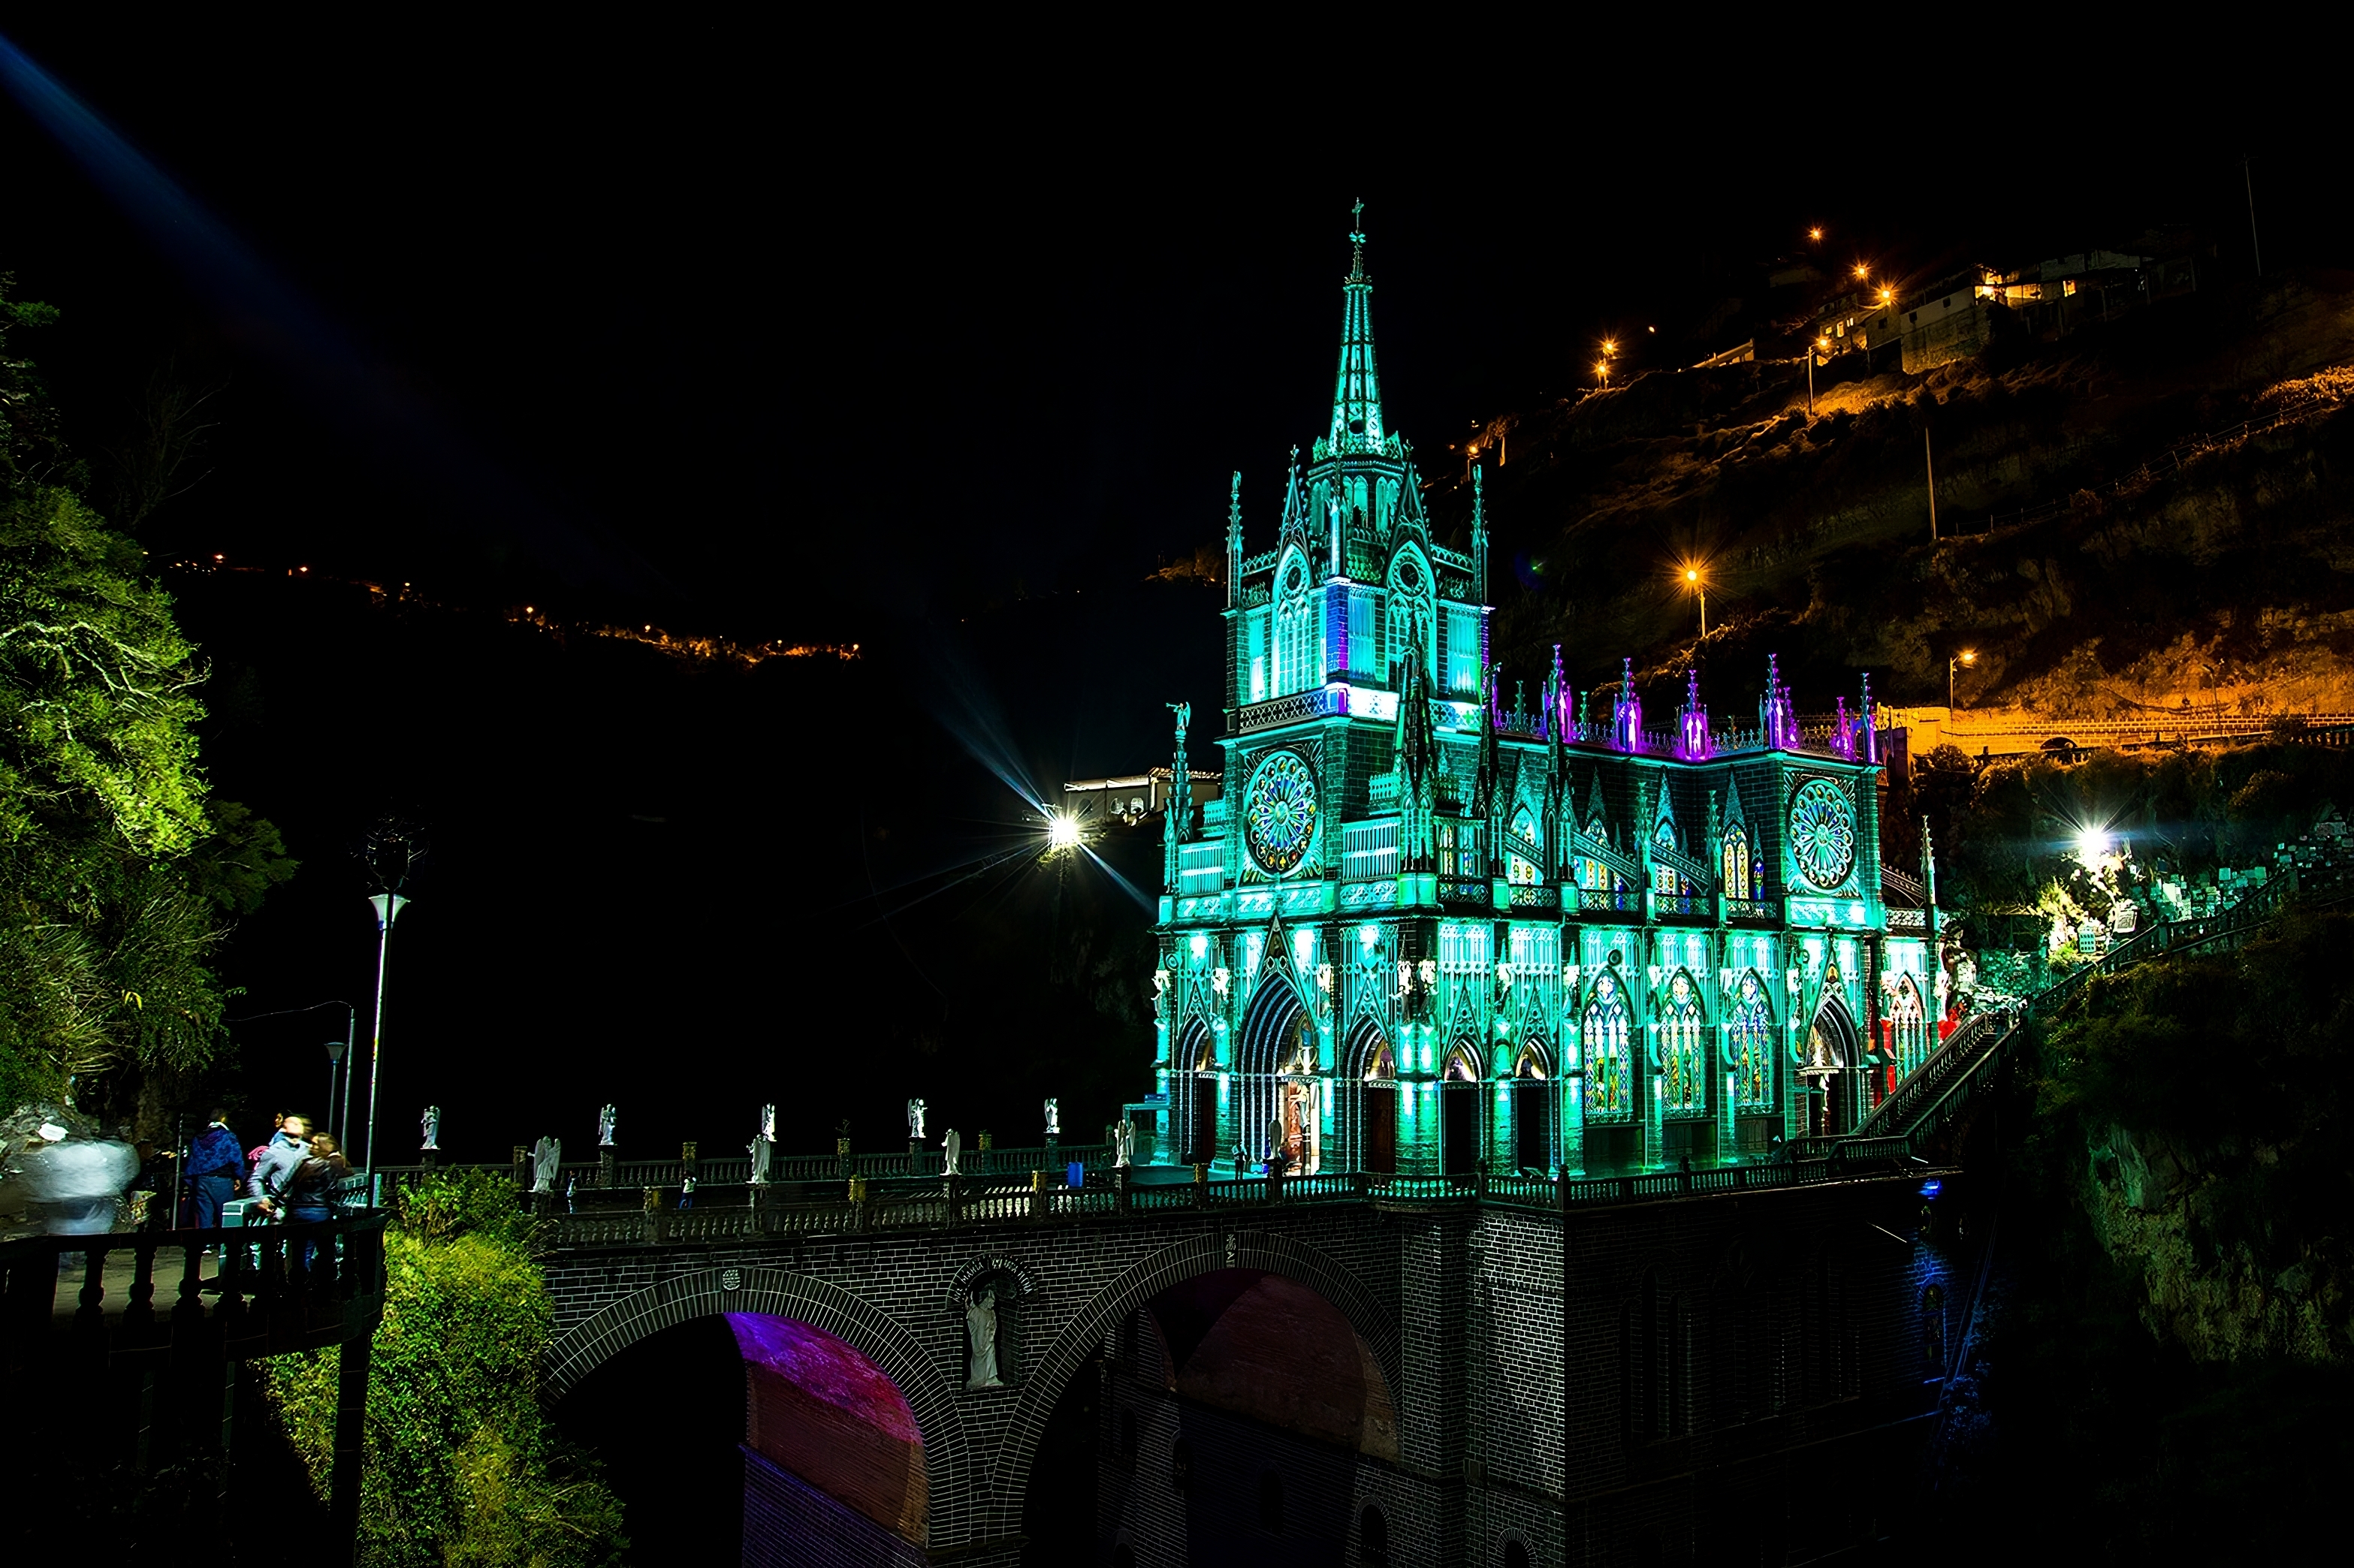 Santuario de las Lajas transformed